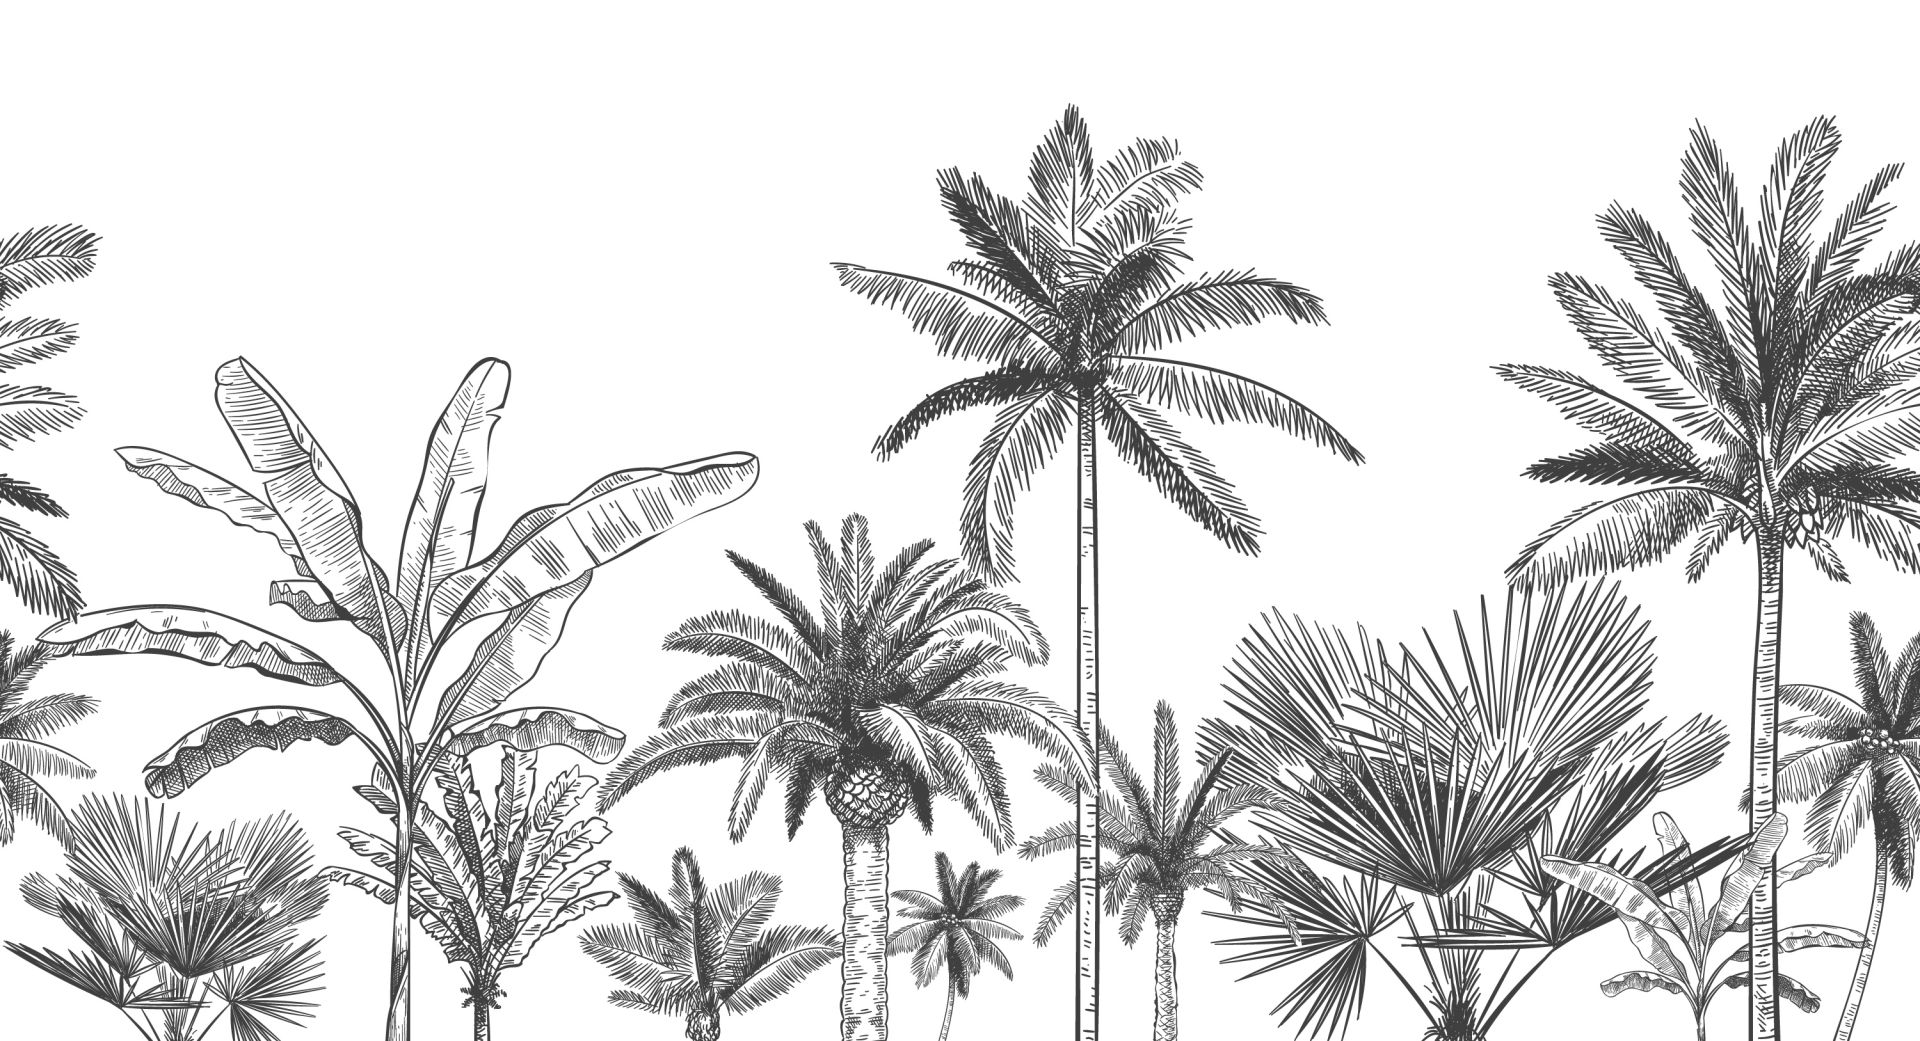 Papier peint panoramique jungle graphique - Kam & Leon